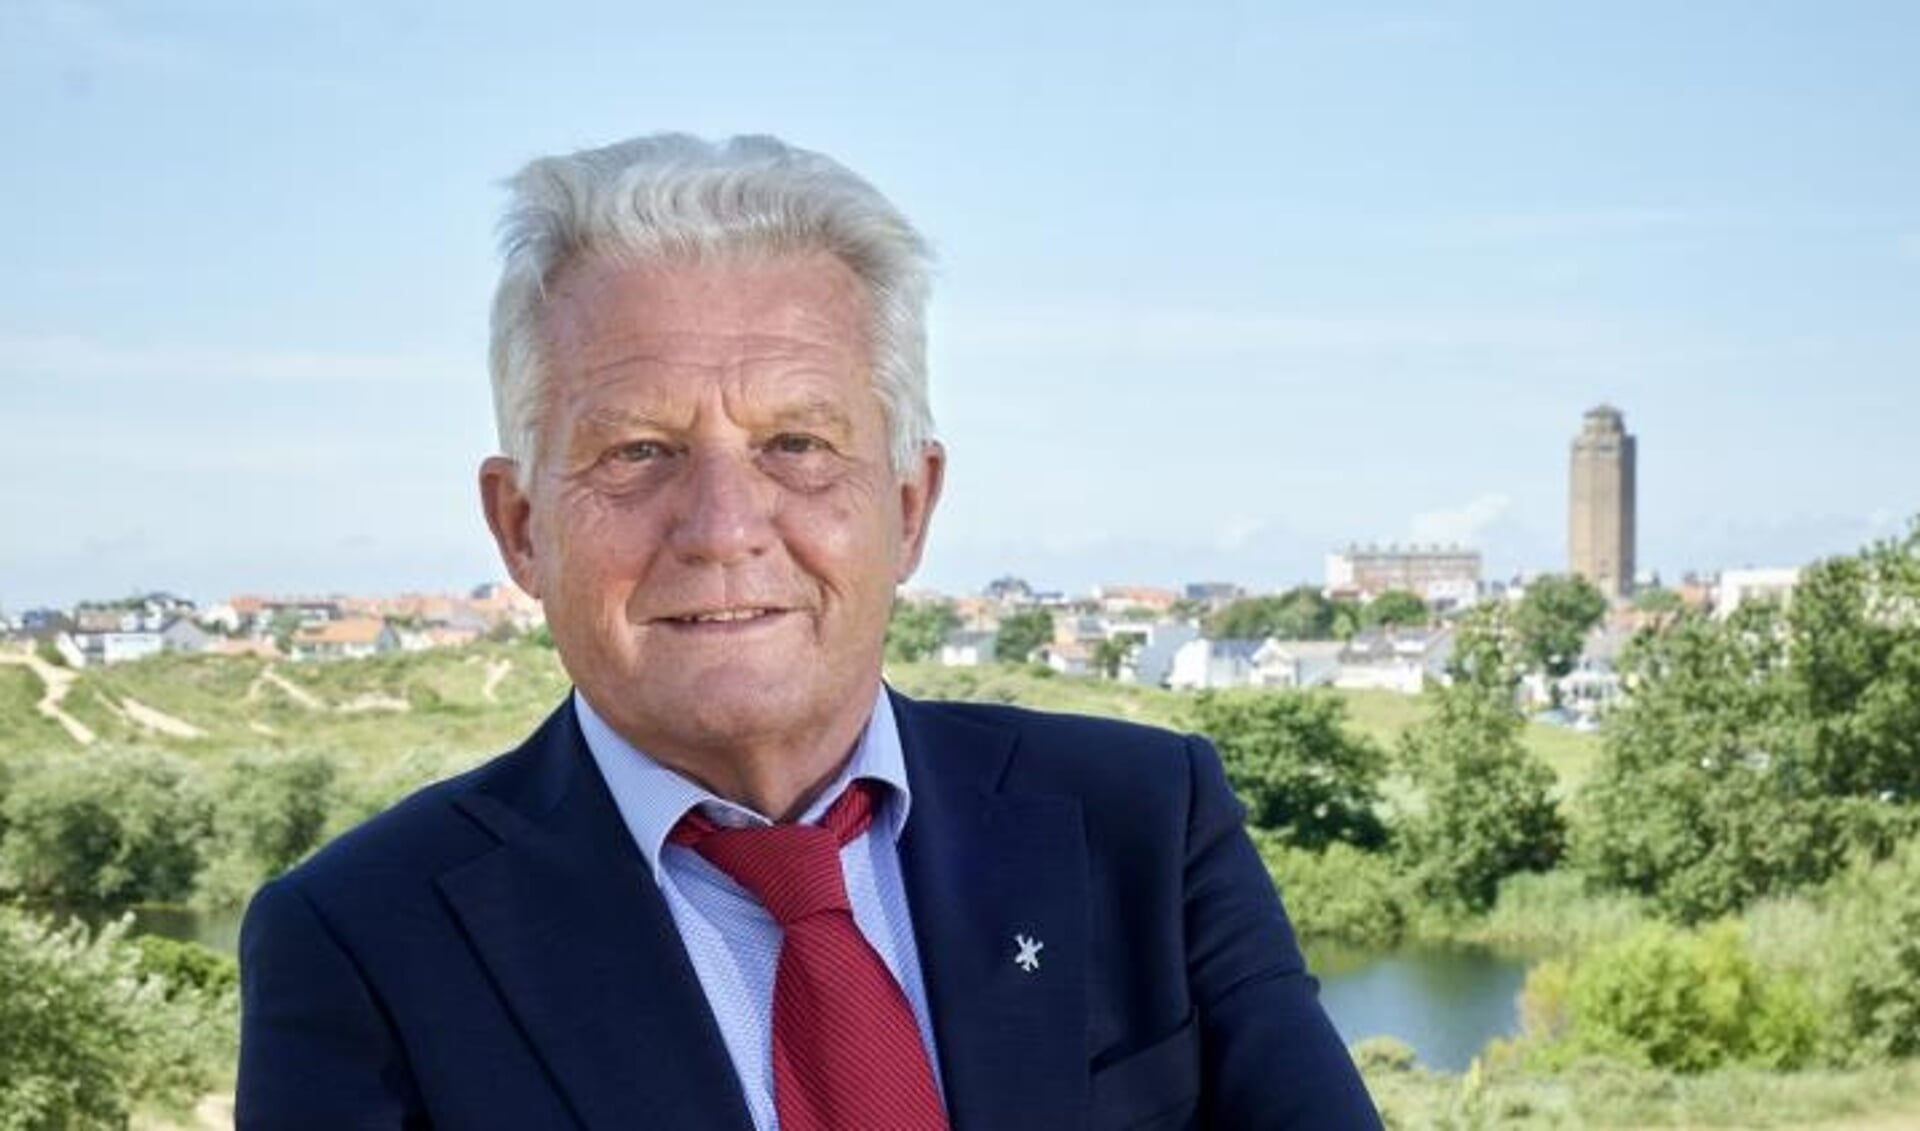 Peter Kramer is na 8 maanden alweer gestopt als wethouder voor Zandvoort